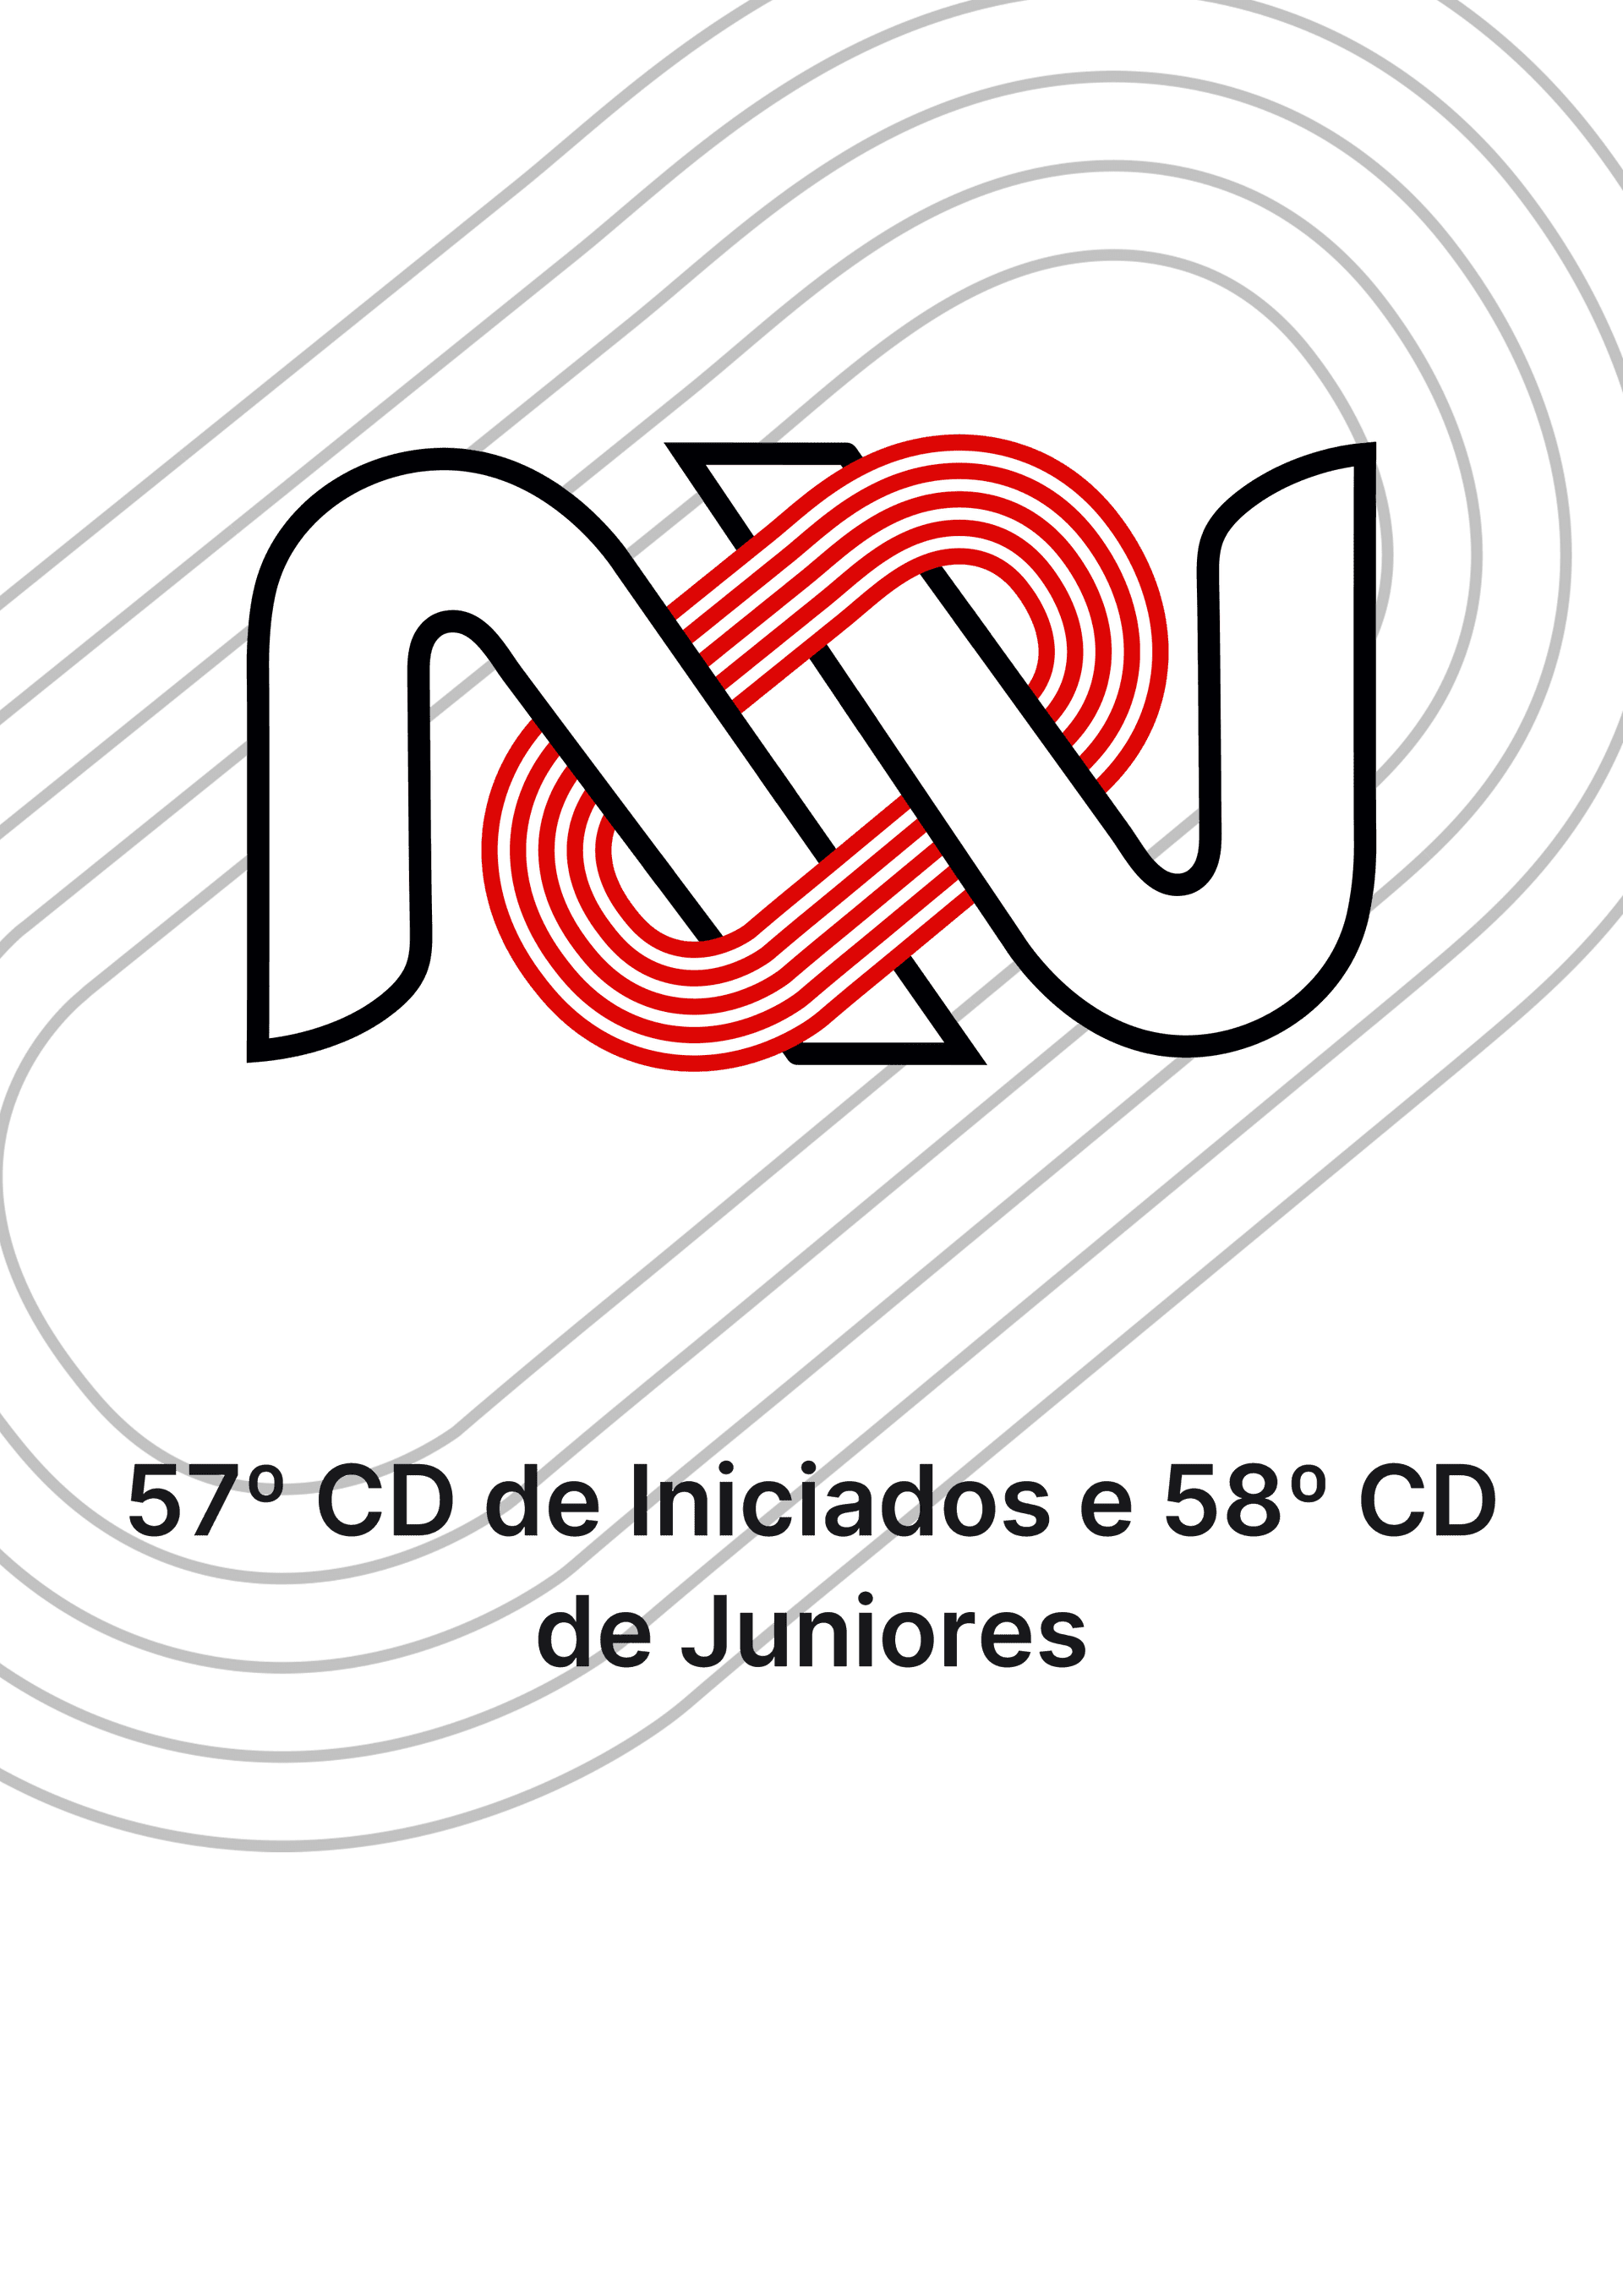 57º CD de Iniciados e 58º CD de Juniores